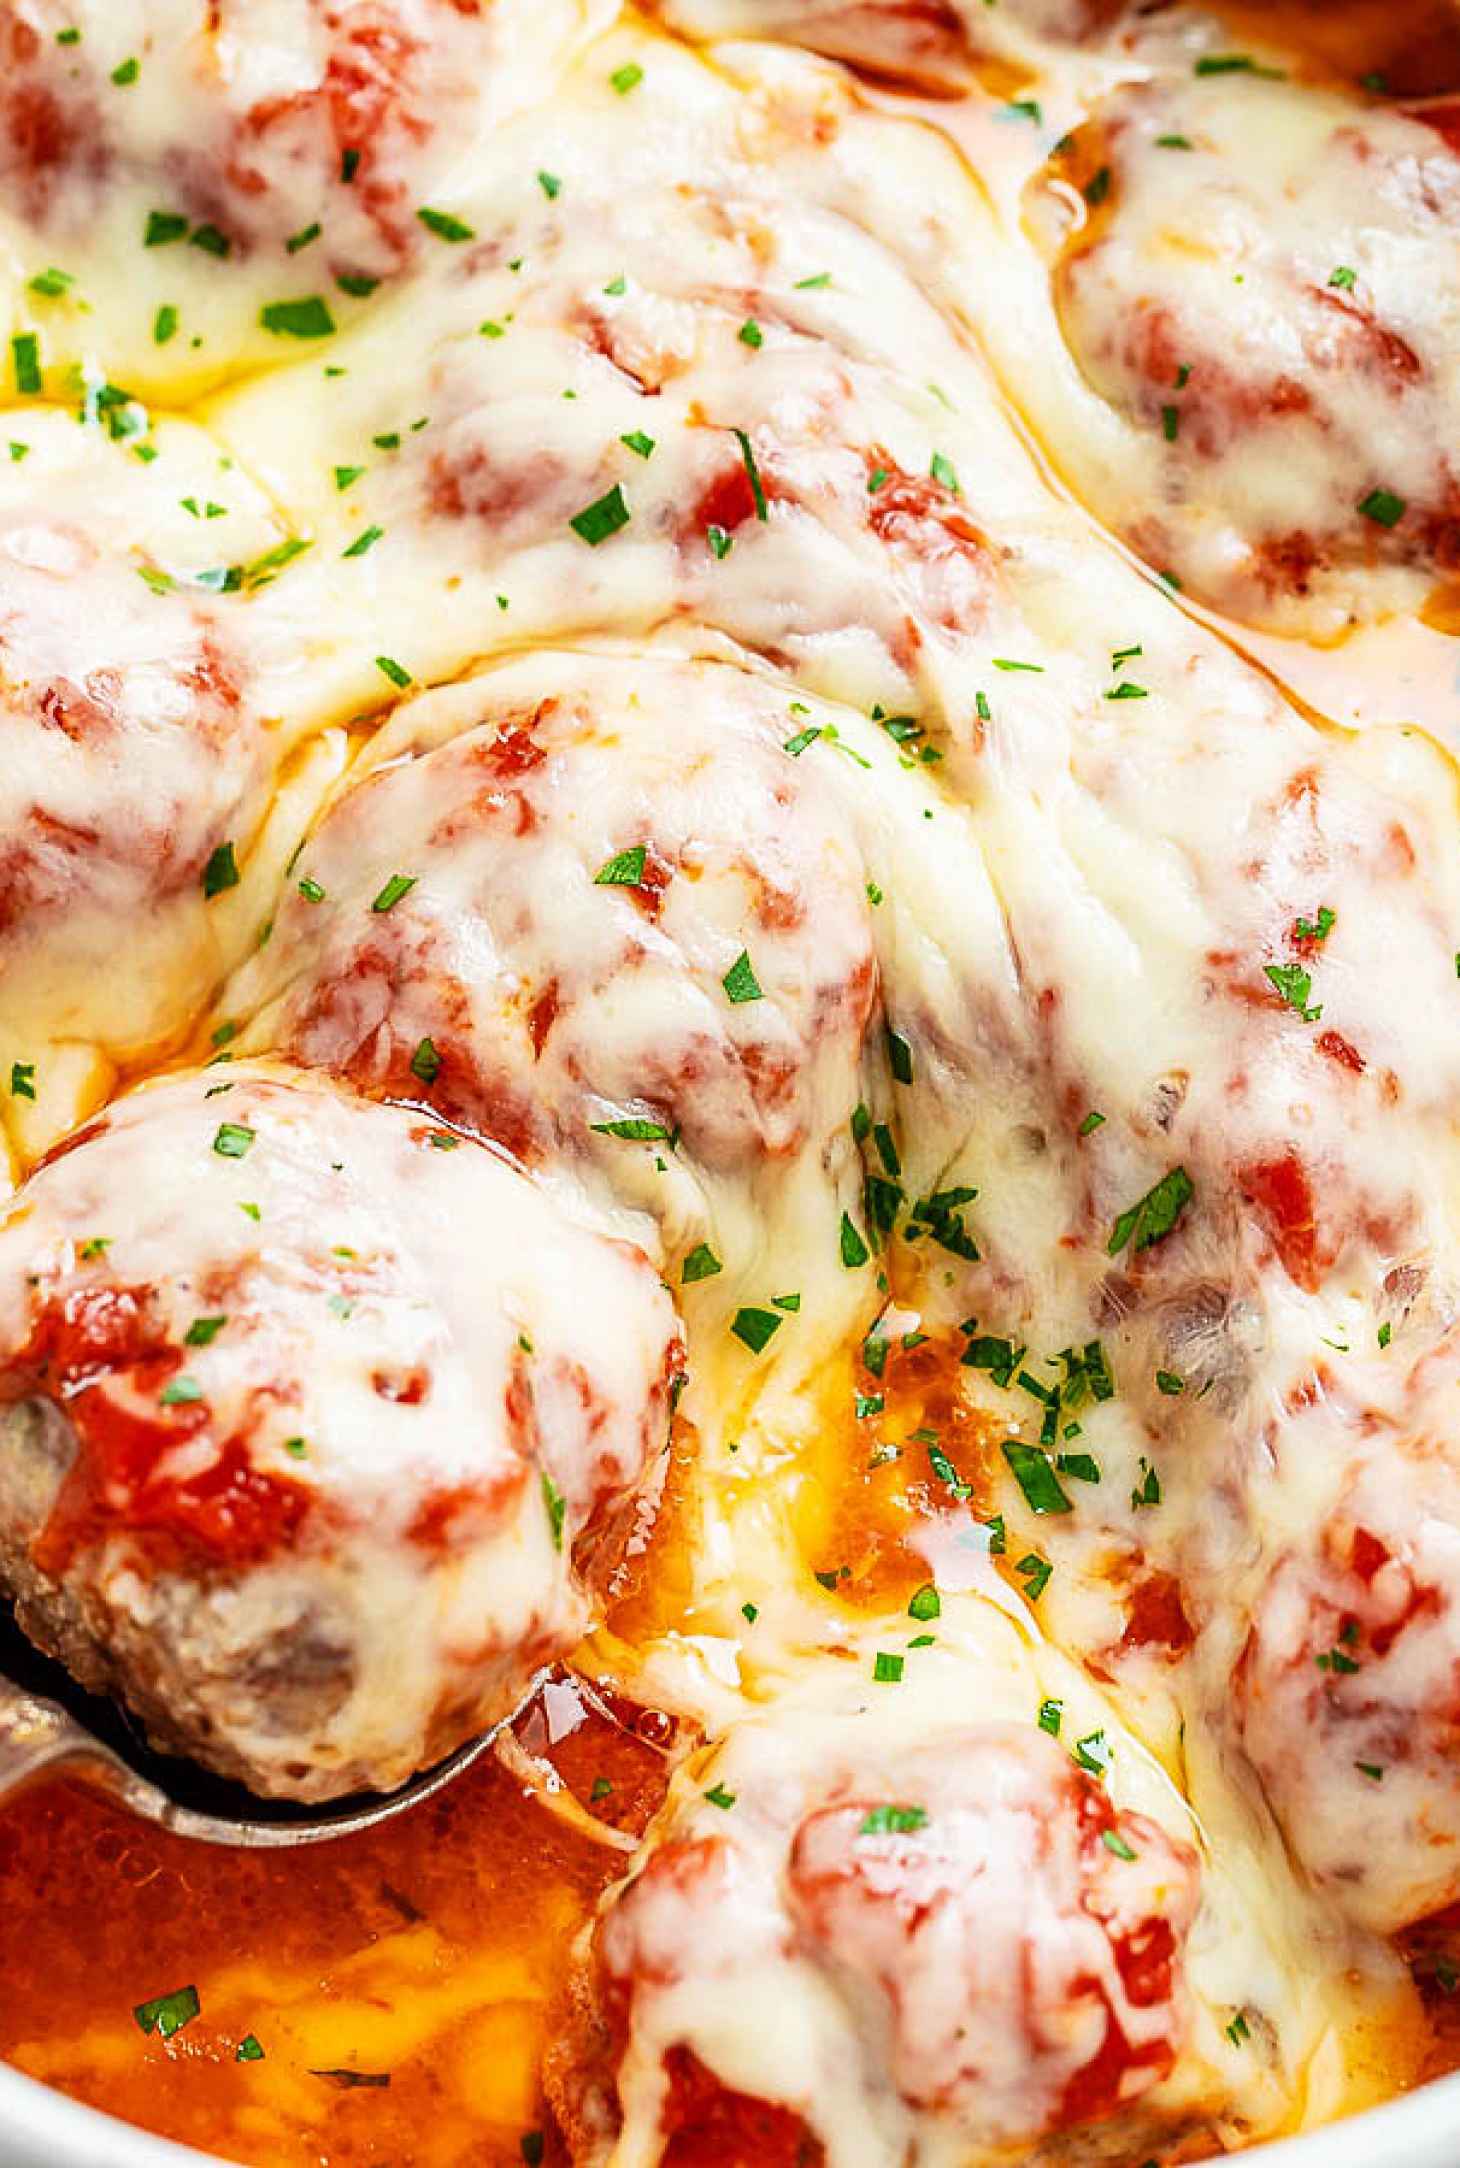 Cheesy Meatballs Casserole {Low Carb} - #recipe by #eatwell101 - https://www.eatwell101.com/turkey-meatballs-casserole-recipe